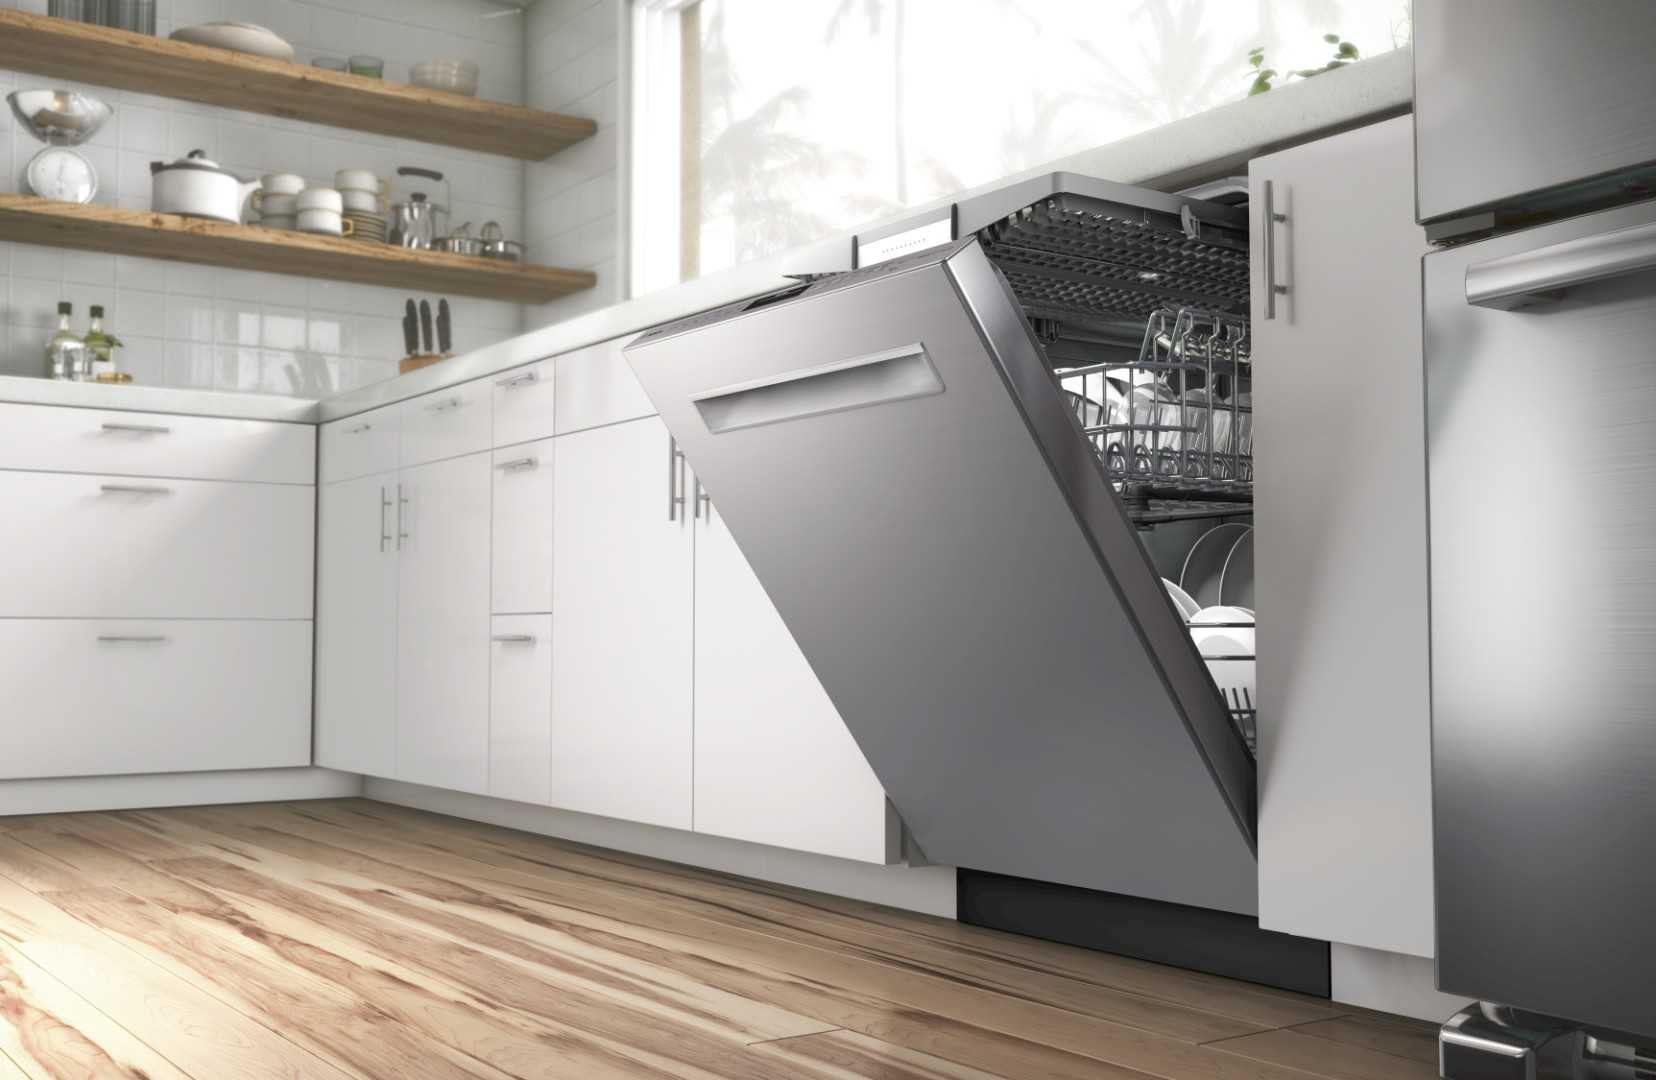 Рейтинг топ-13 встраиваемых посудомоечных машин 45 см 2020 года. советы по выбору, обзор, характеристики, плюсы и минусы